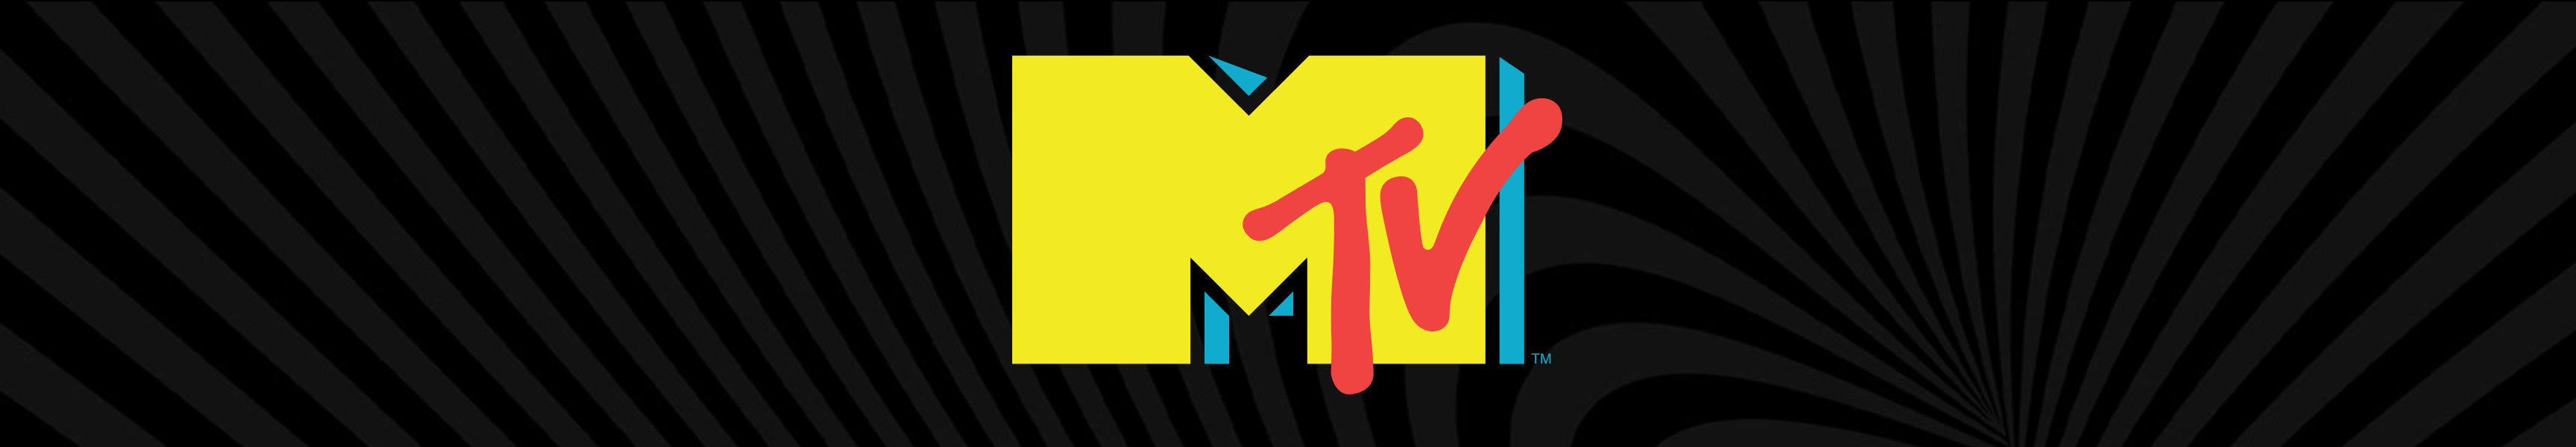 MTV Flachmänner